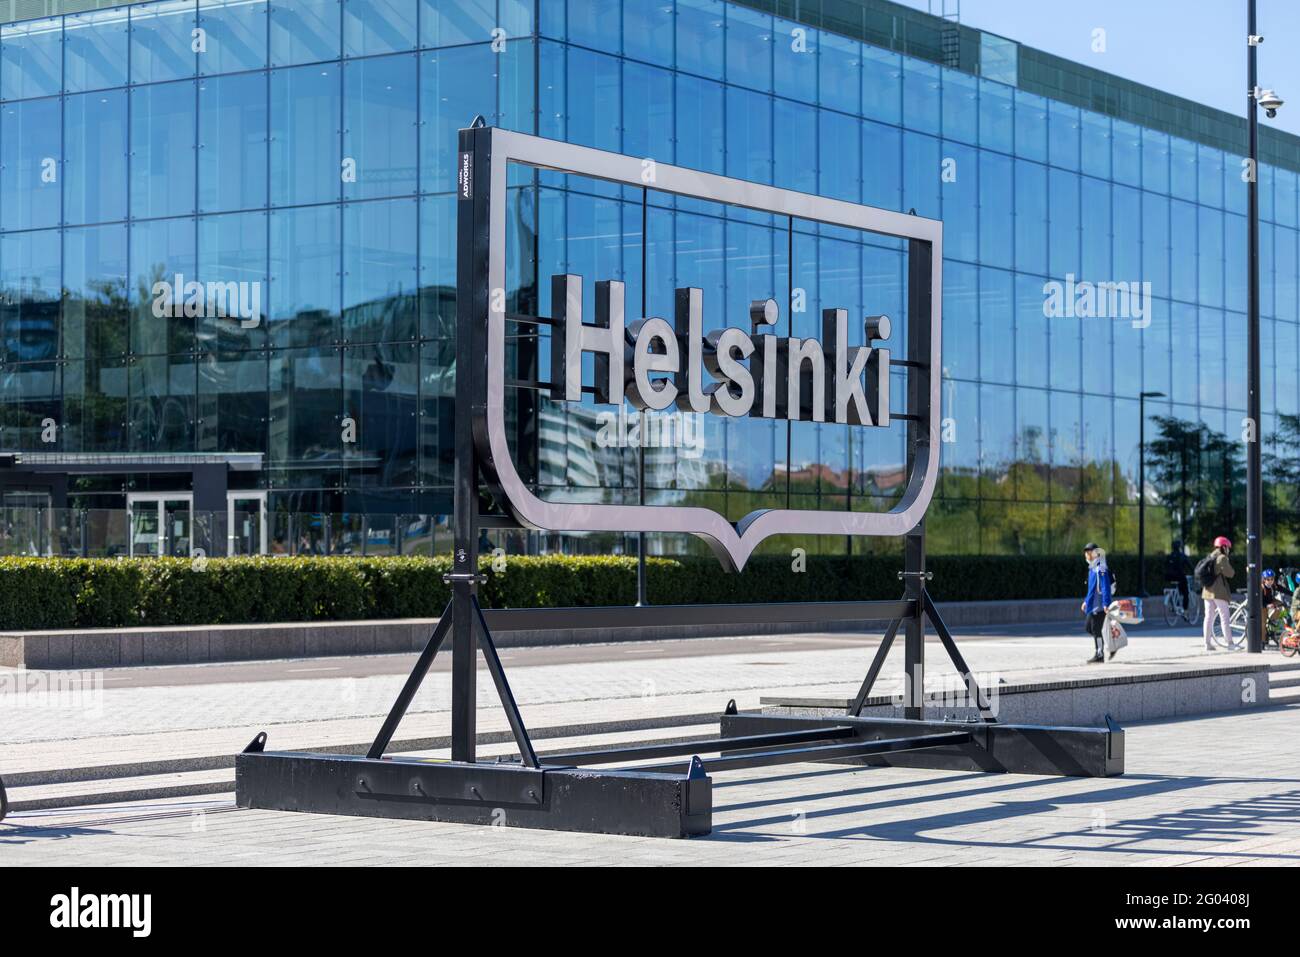 Enorme "Helsinki" - sfondo per i turisti da utilizzare in selfie e foto di viaggio Foto Stock